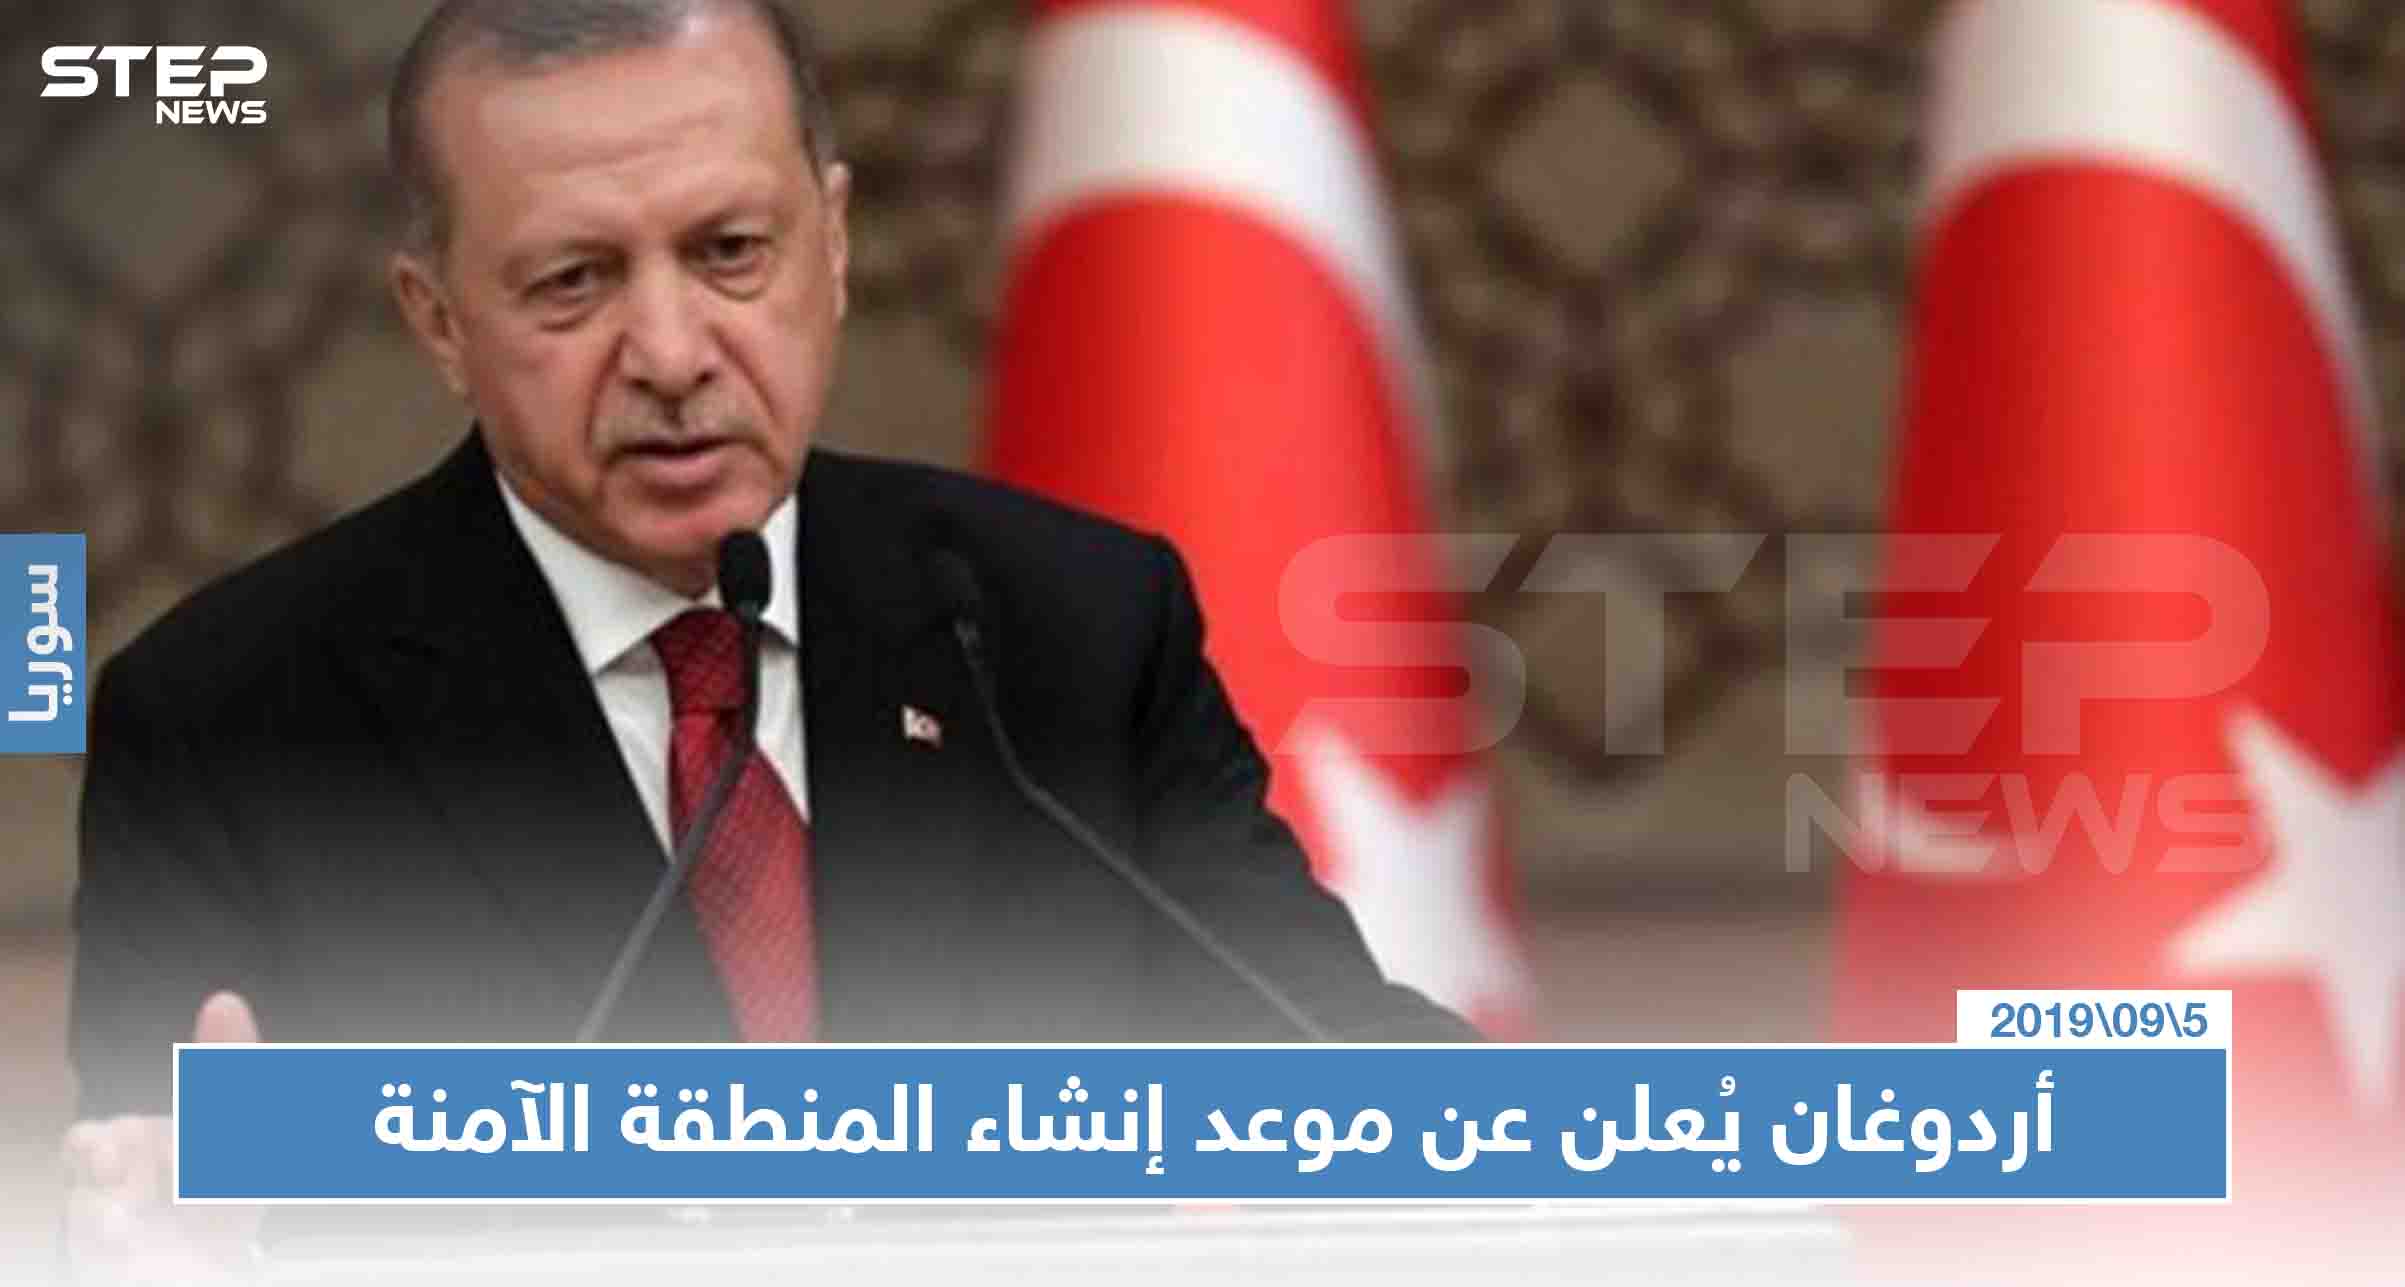 أردوغان يُعلن عن موعد إنشاء المنطقة الآمنة وينوي توطين مليون سوري!!